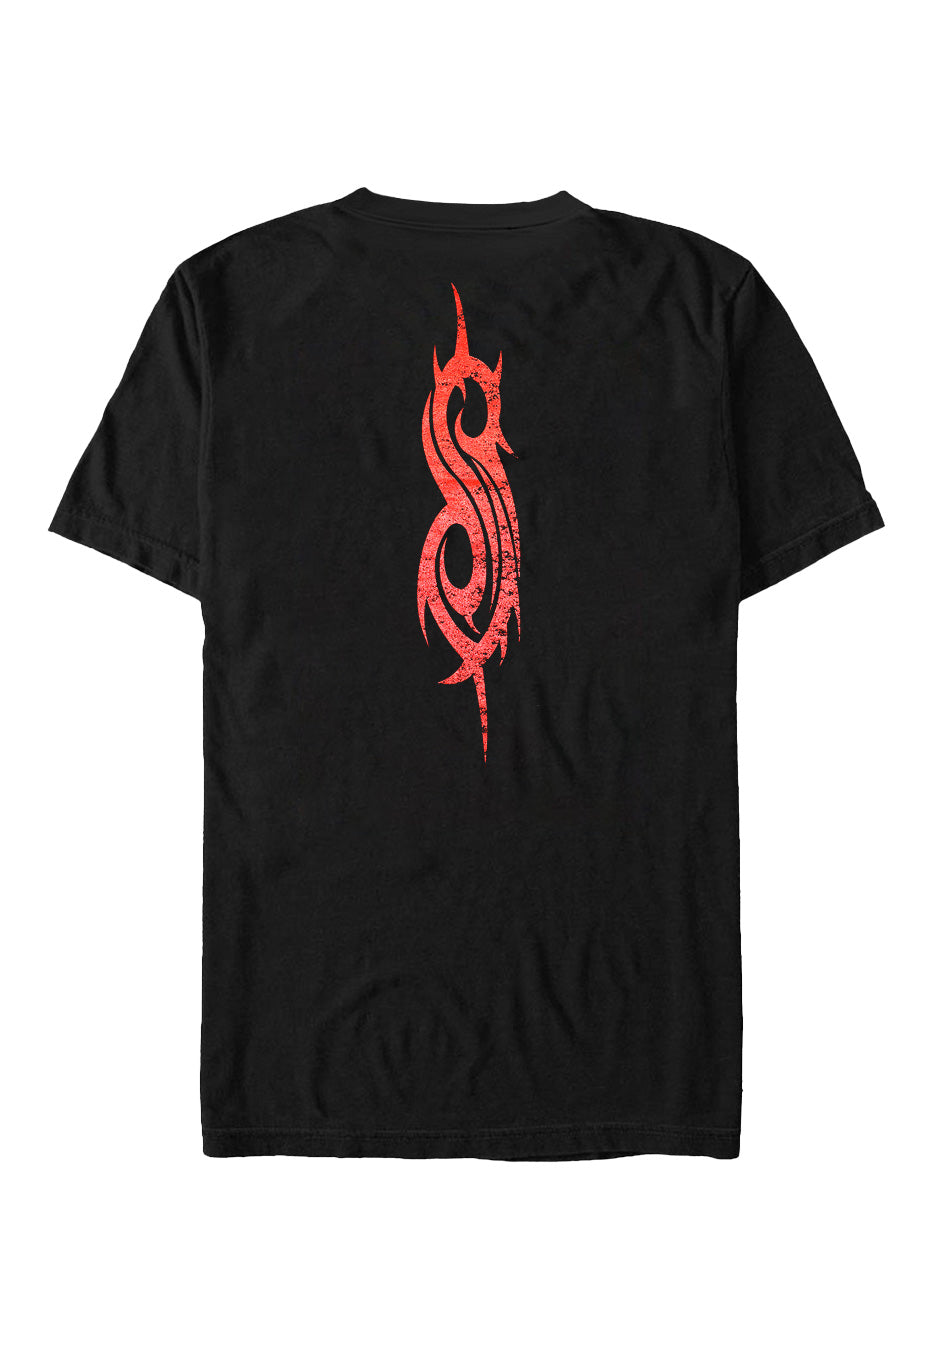 Slipknot - Iowa Goat - T-Shirt